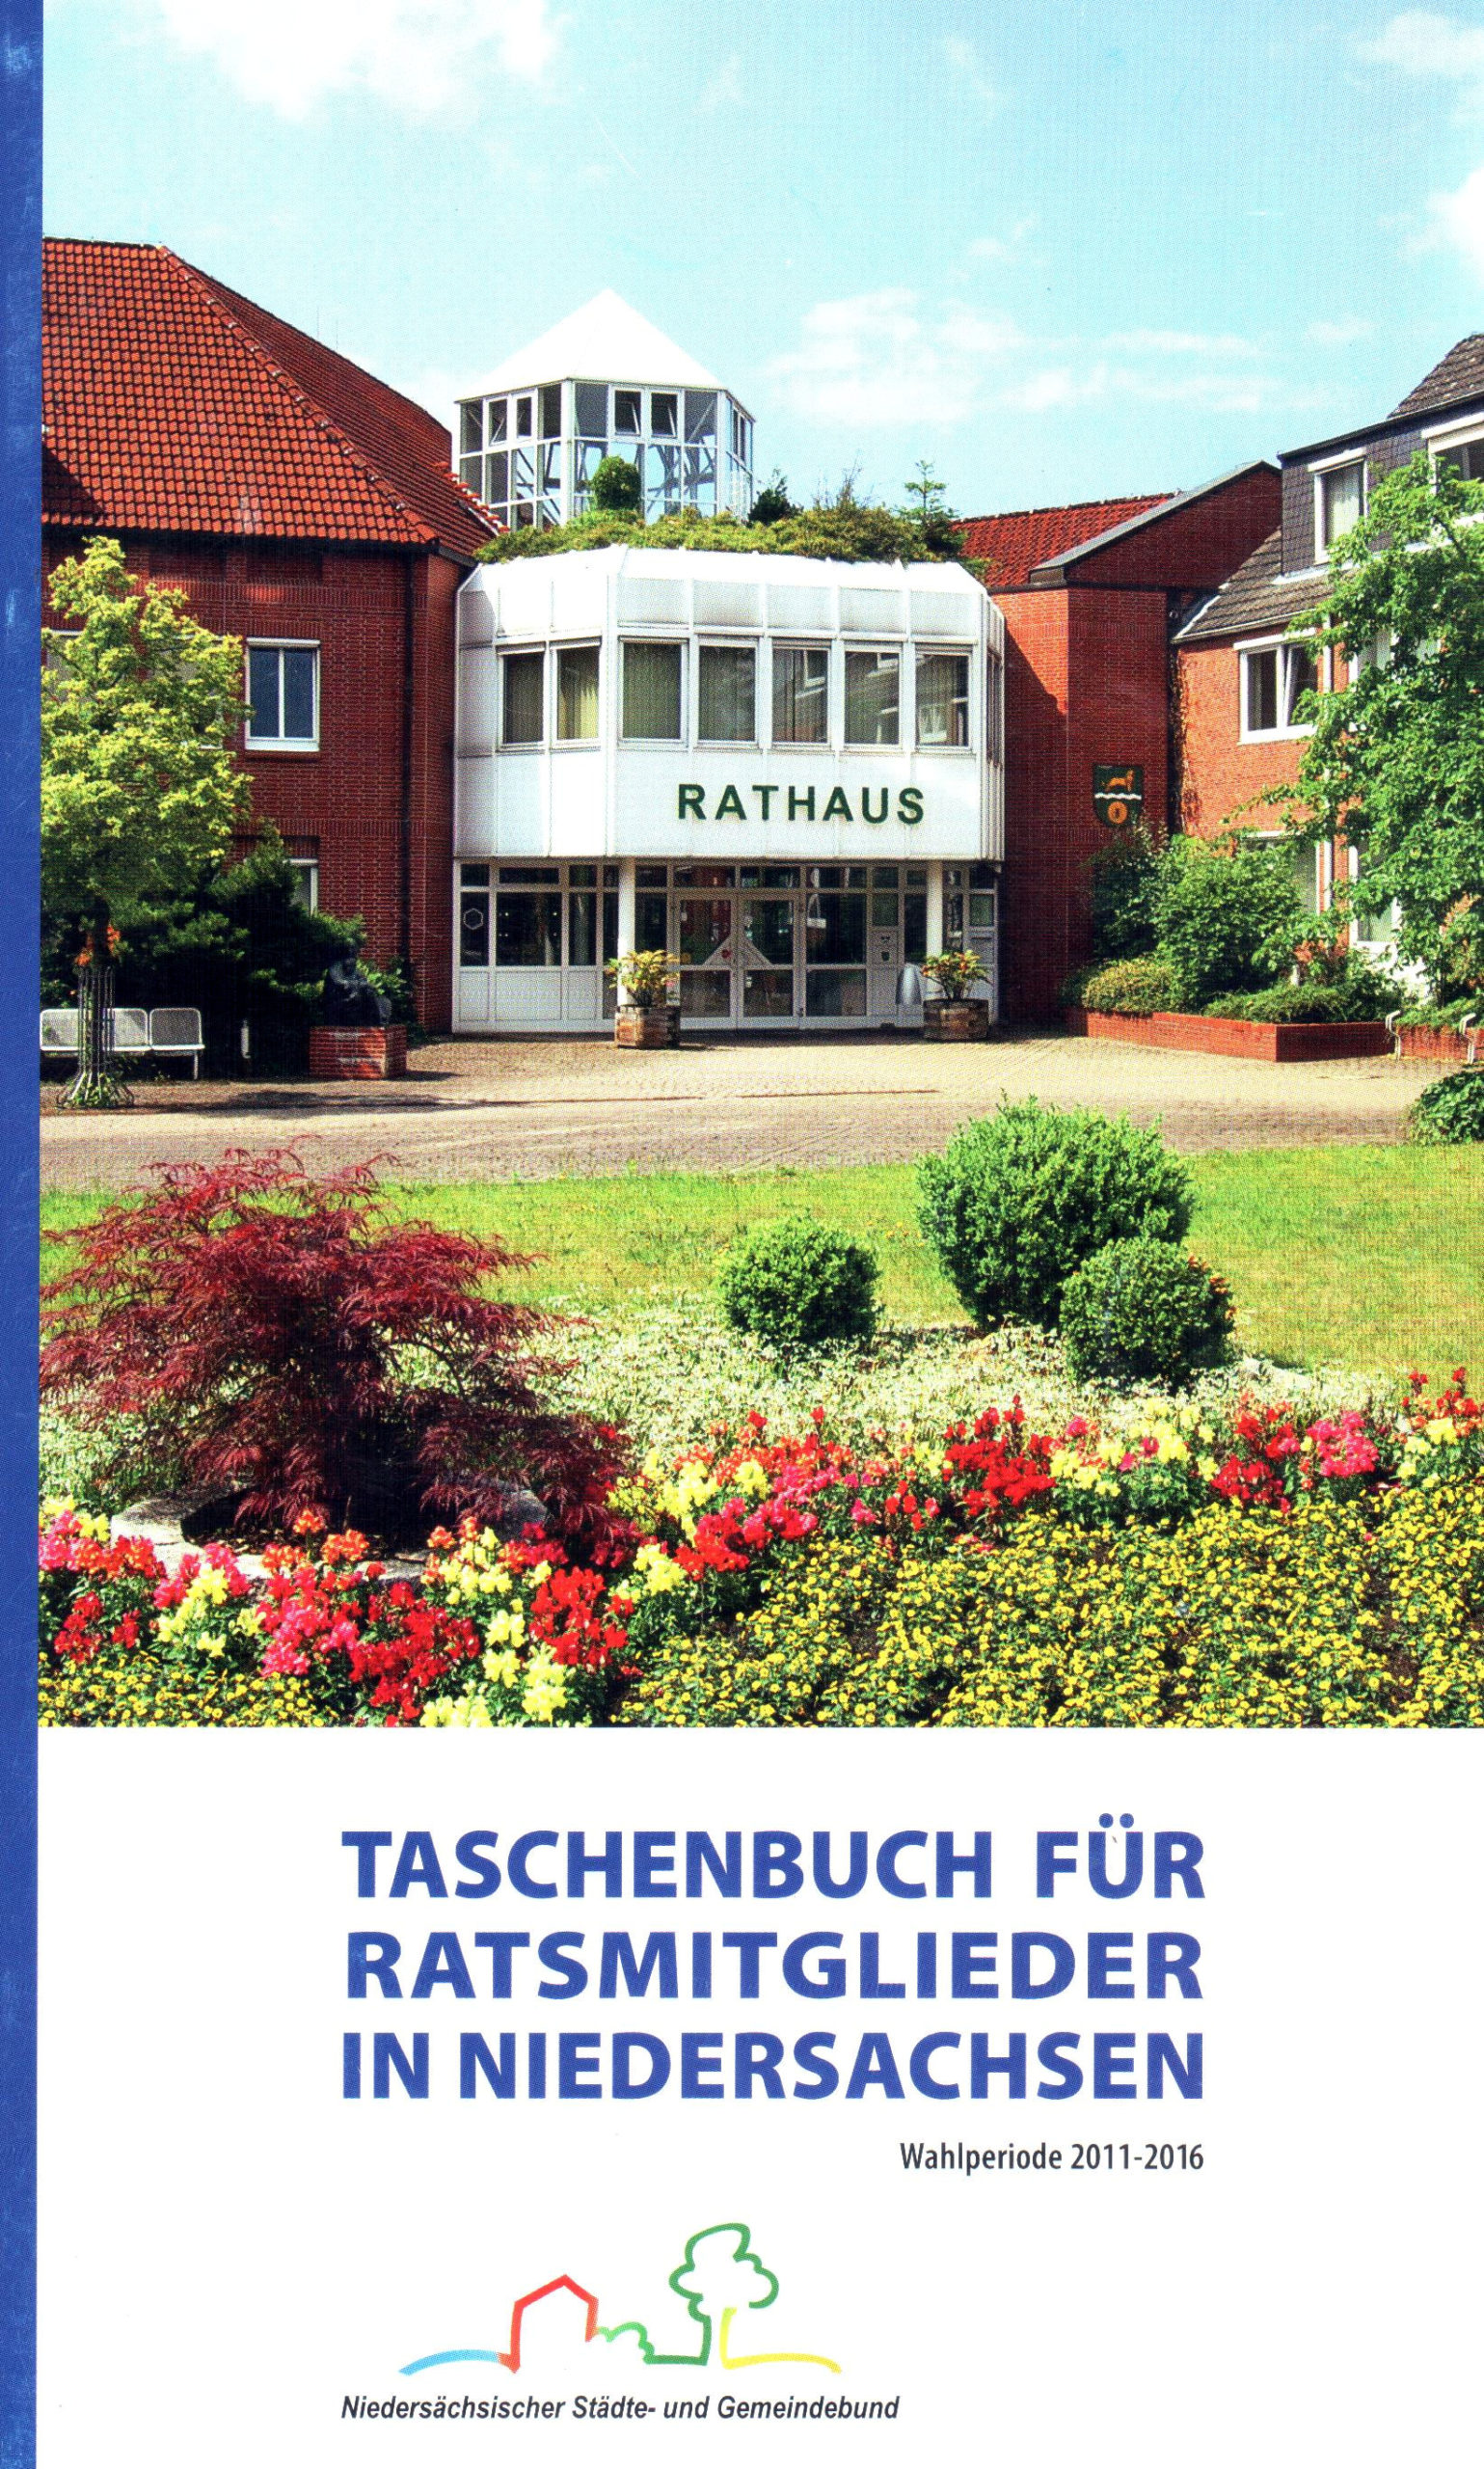 Taschenbuch für Ratsmitglieder in Niedersachsen – Wahlperiode 2011-2016